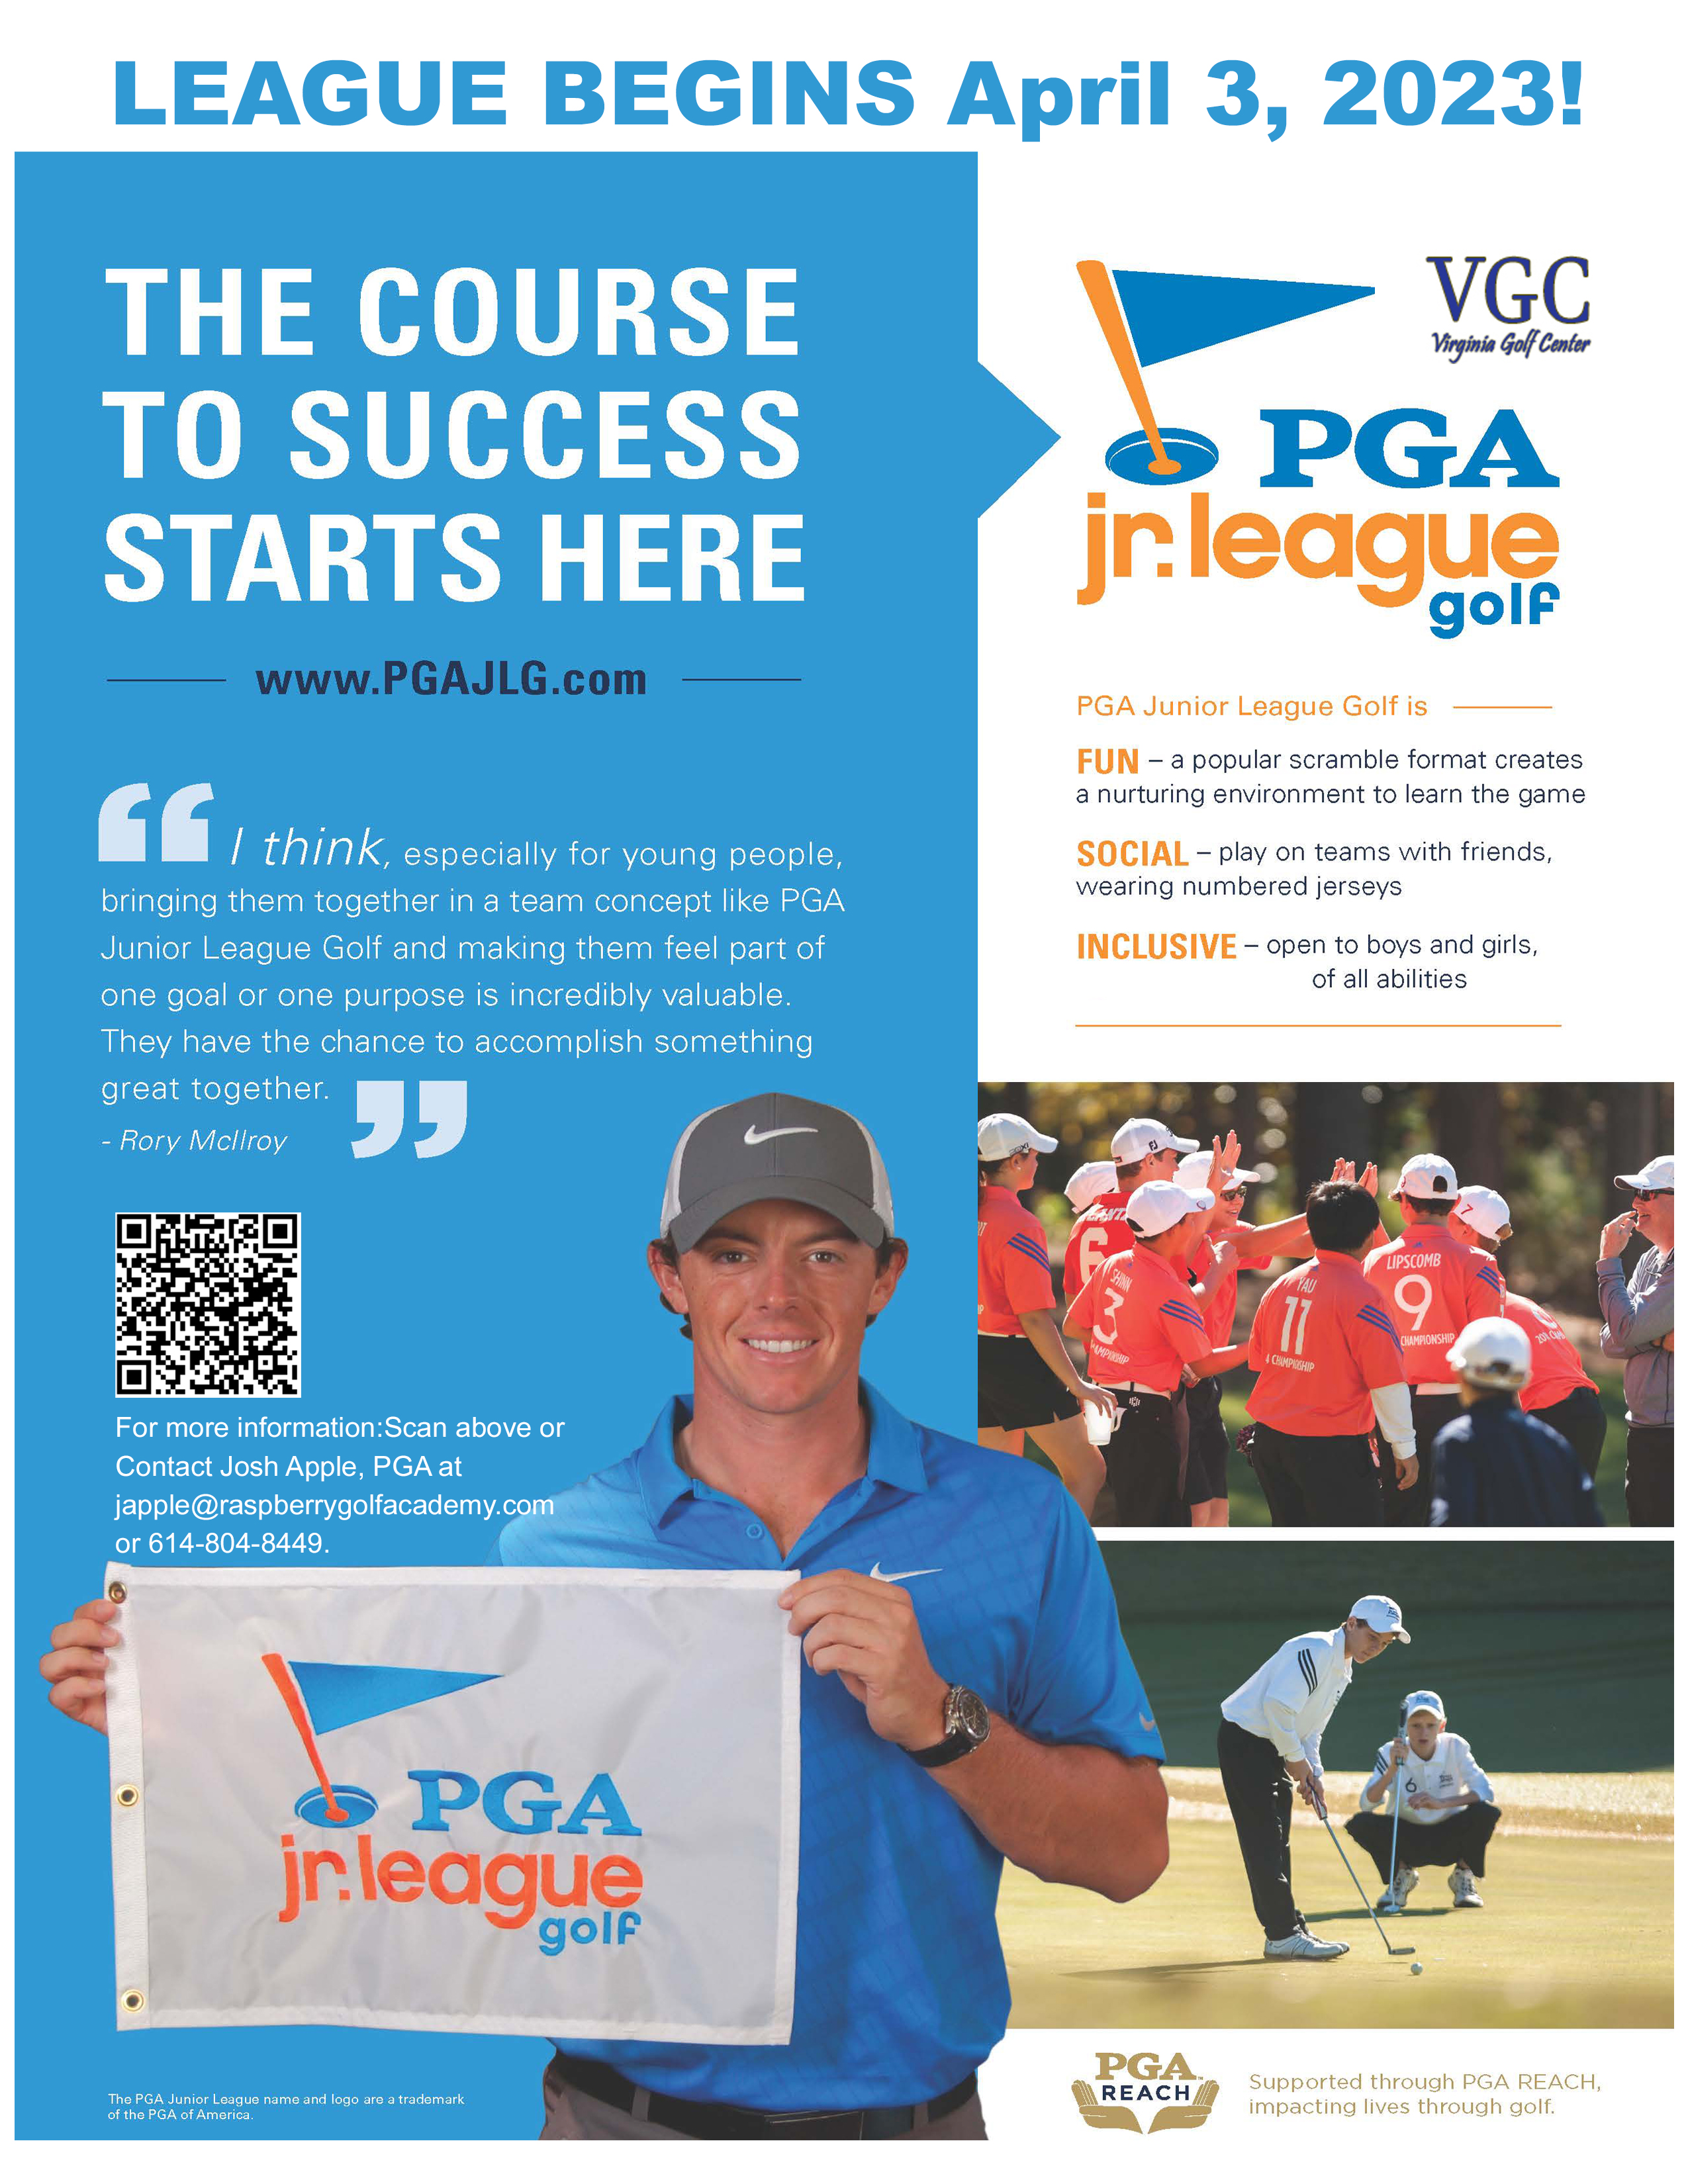 VGC PGA league 2023